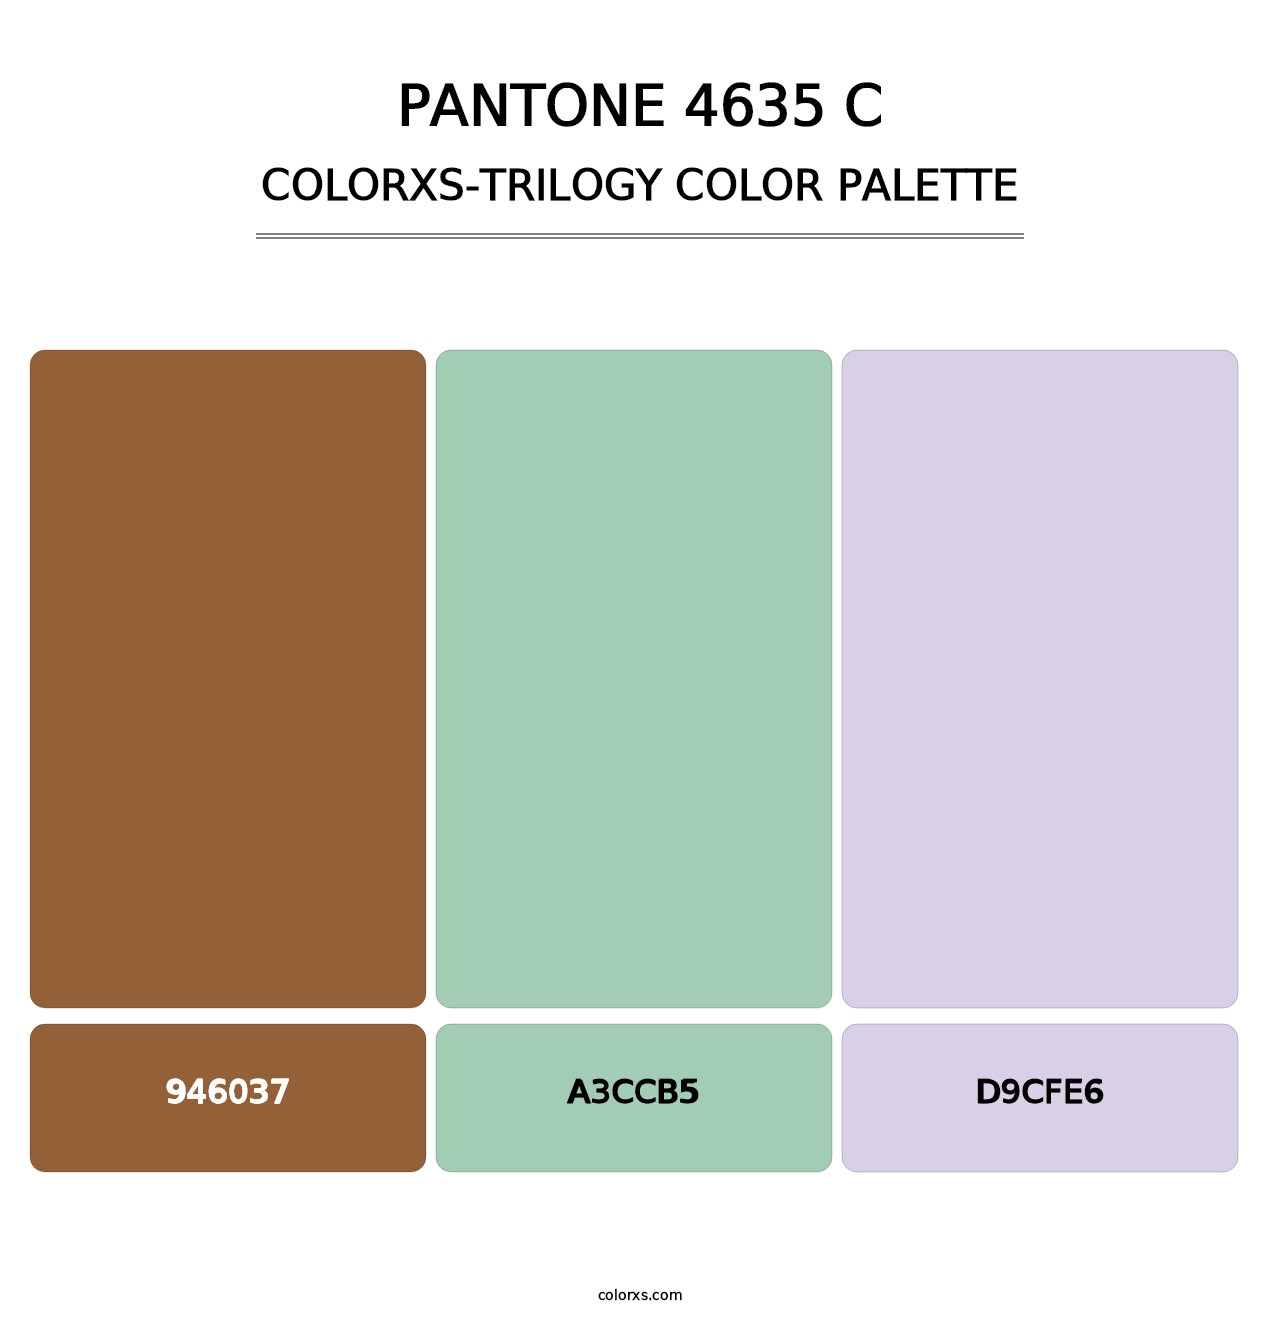 PANTONE 4635 C - Colorxs Trilogy Palette